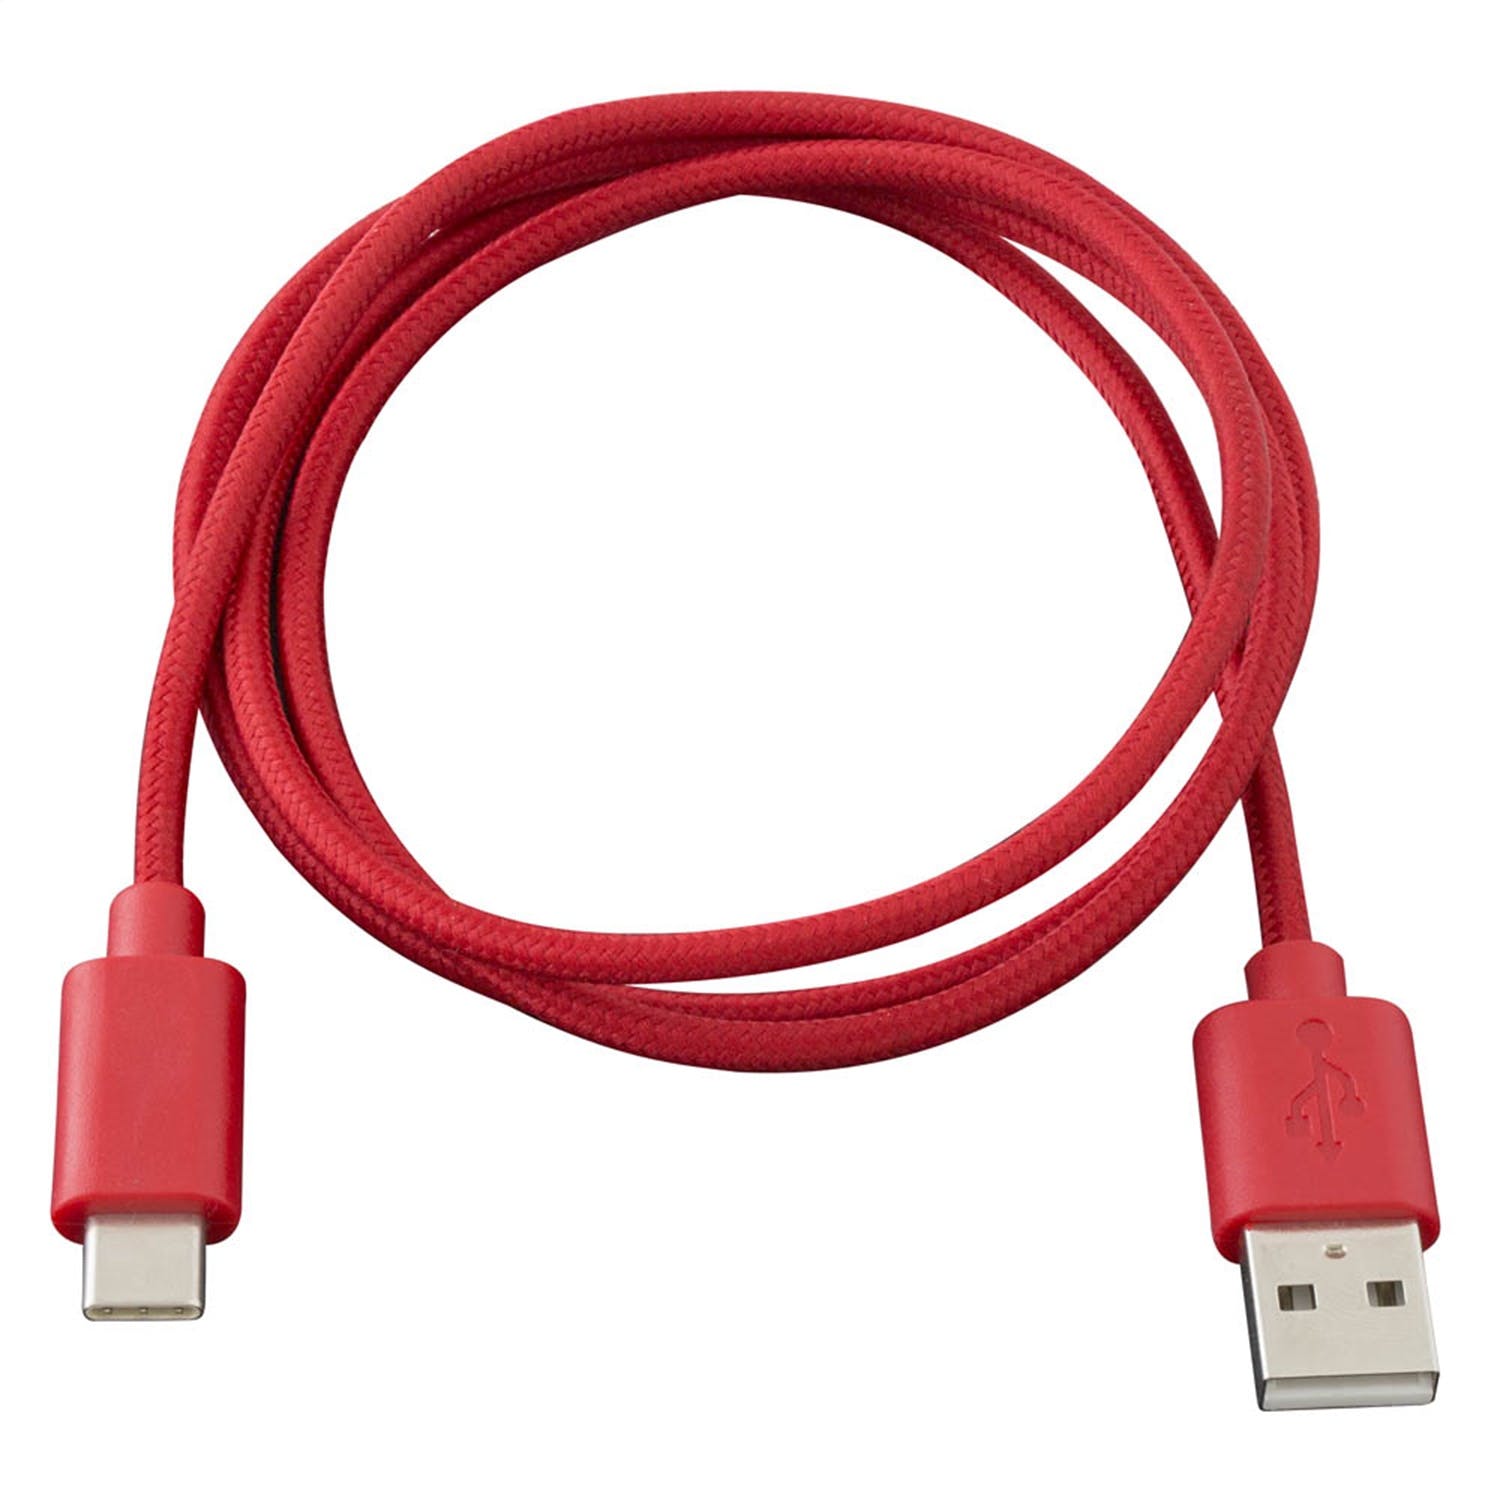 Metra Electronics AXUSBC-RD USB Type C Cable